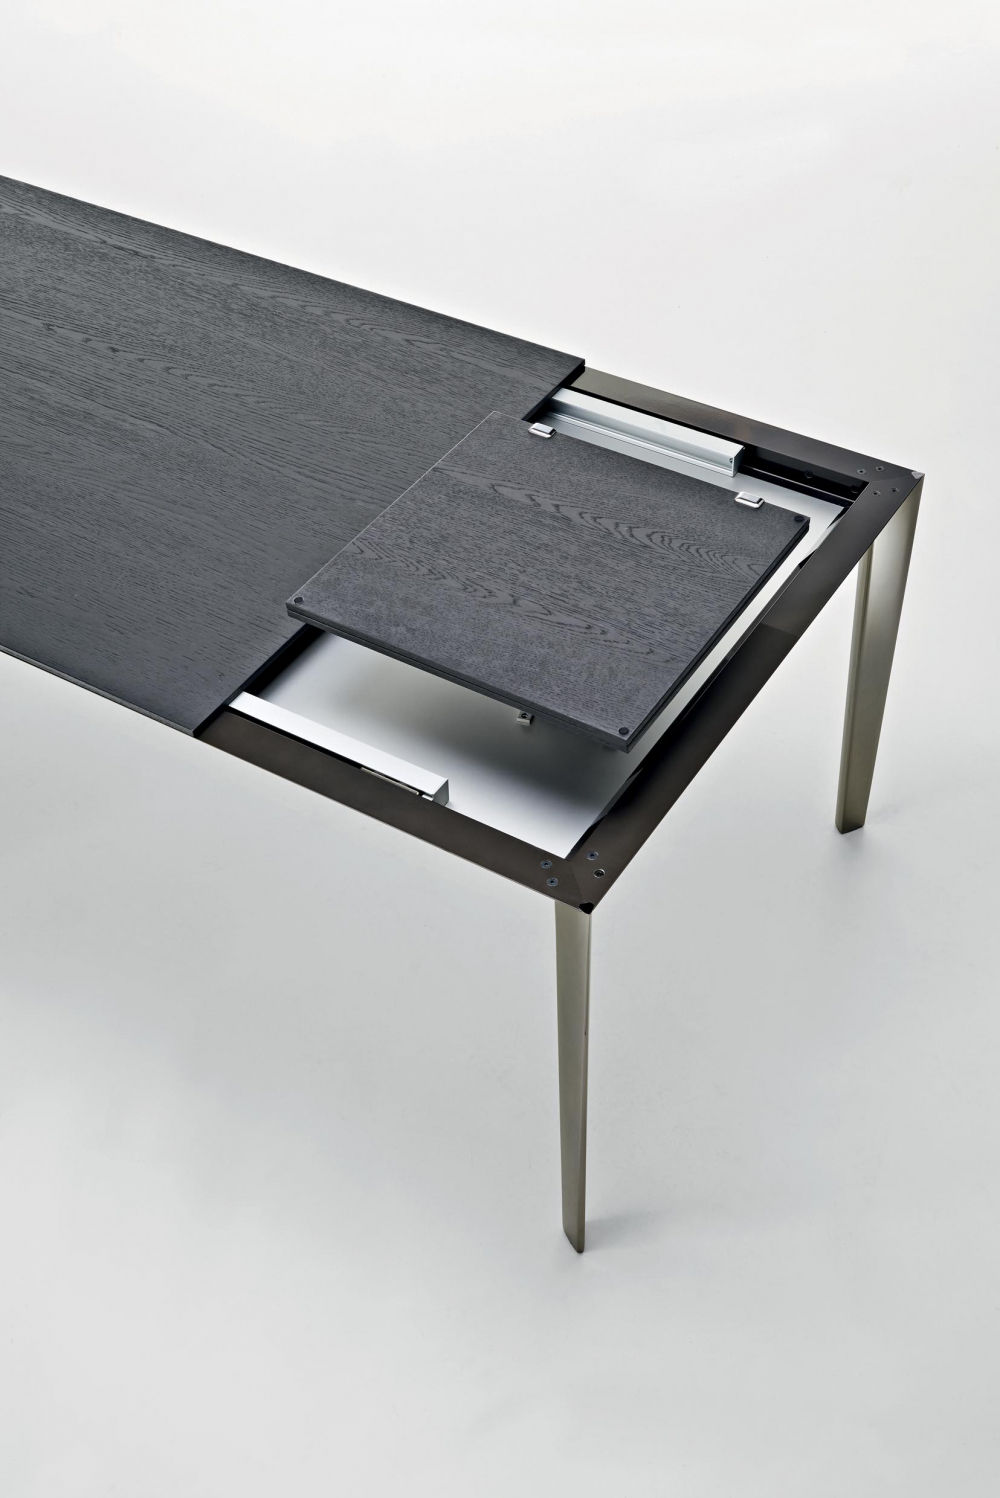 Filigree sont des tables d'appoint spéciales conçues par Rodolfo Dordoni et proposées par Peverelli.